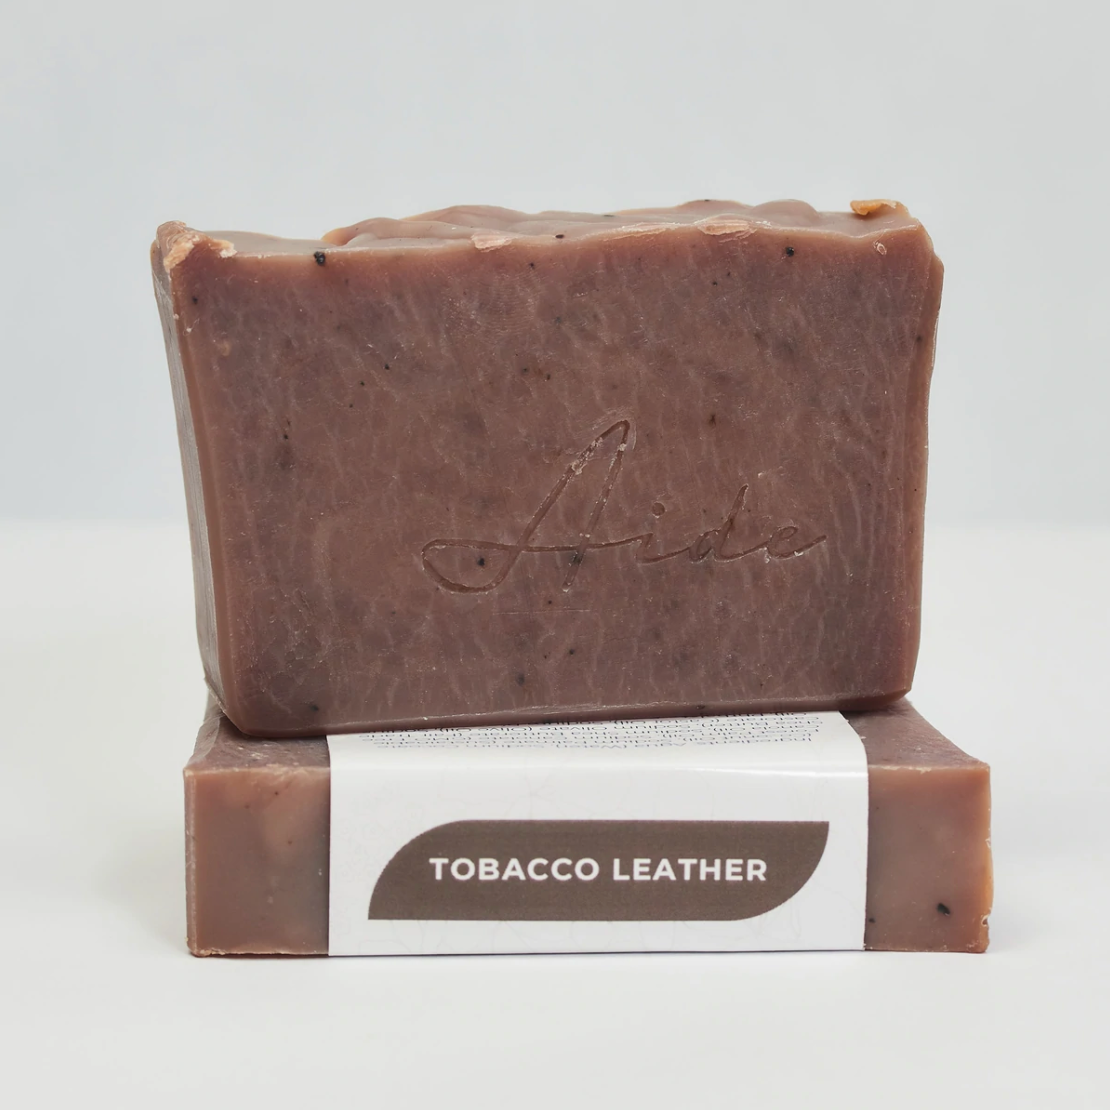 Tobacco Leather Soap Bar | Aide Bodycare